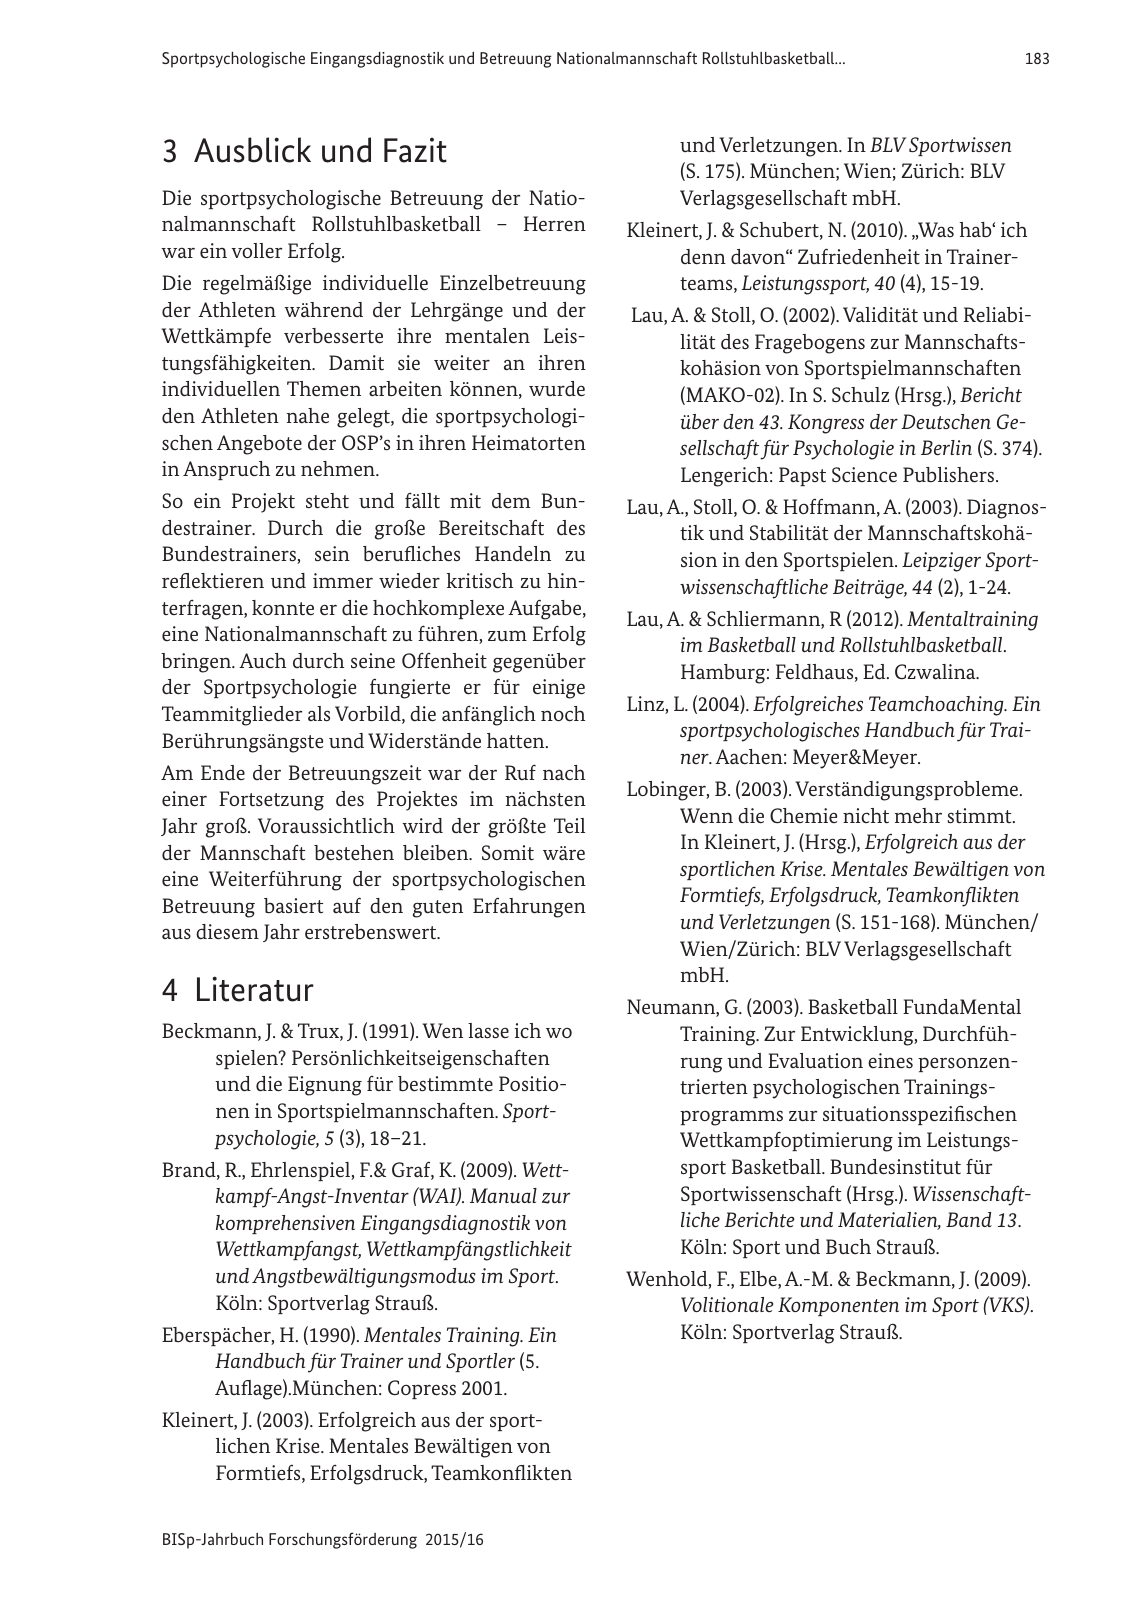 Vorschau BISp-Jahrbuch Forschungsförderung 2015/16 Seite 185